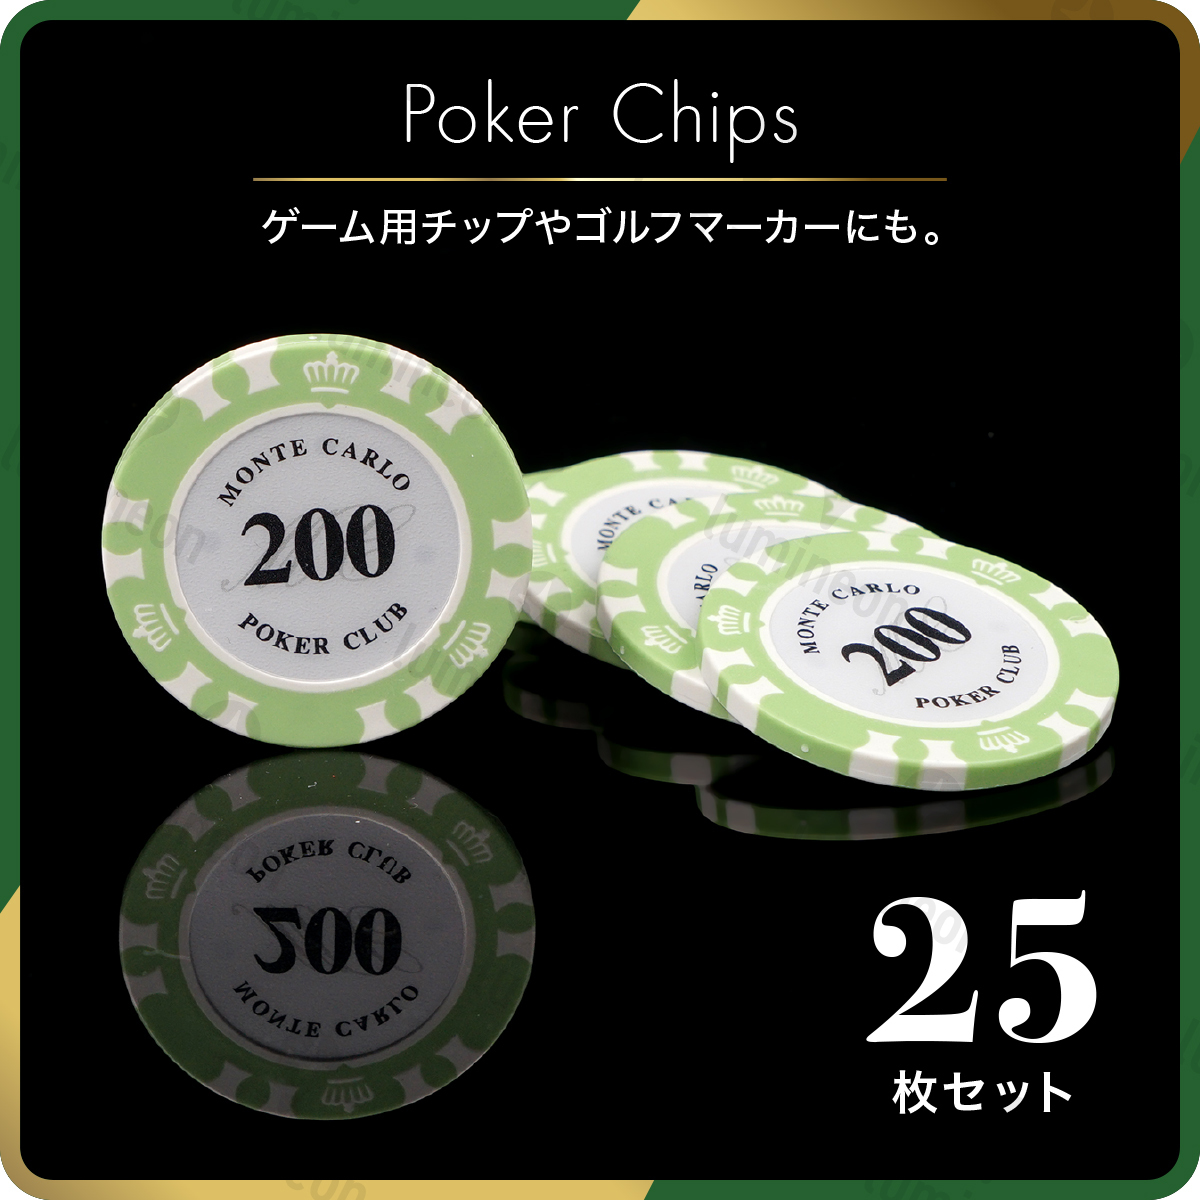 ポーカー チップ $200 セット チップ カジノ コイン ゴルフ マーカー ボール グリーン マグネット 用品 ゴルフ コンペ 景品 g121i 3_画像1